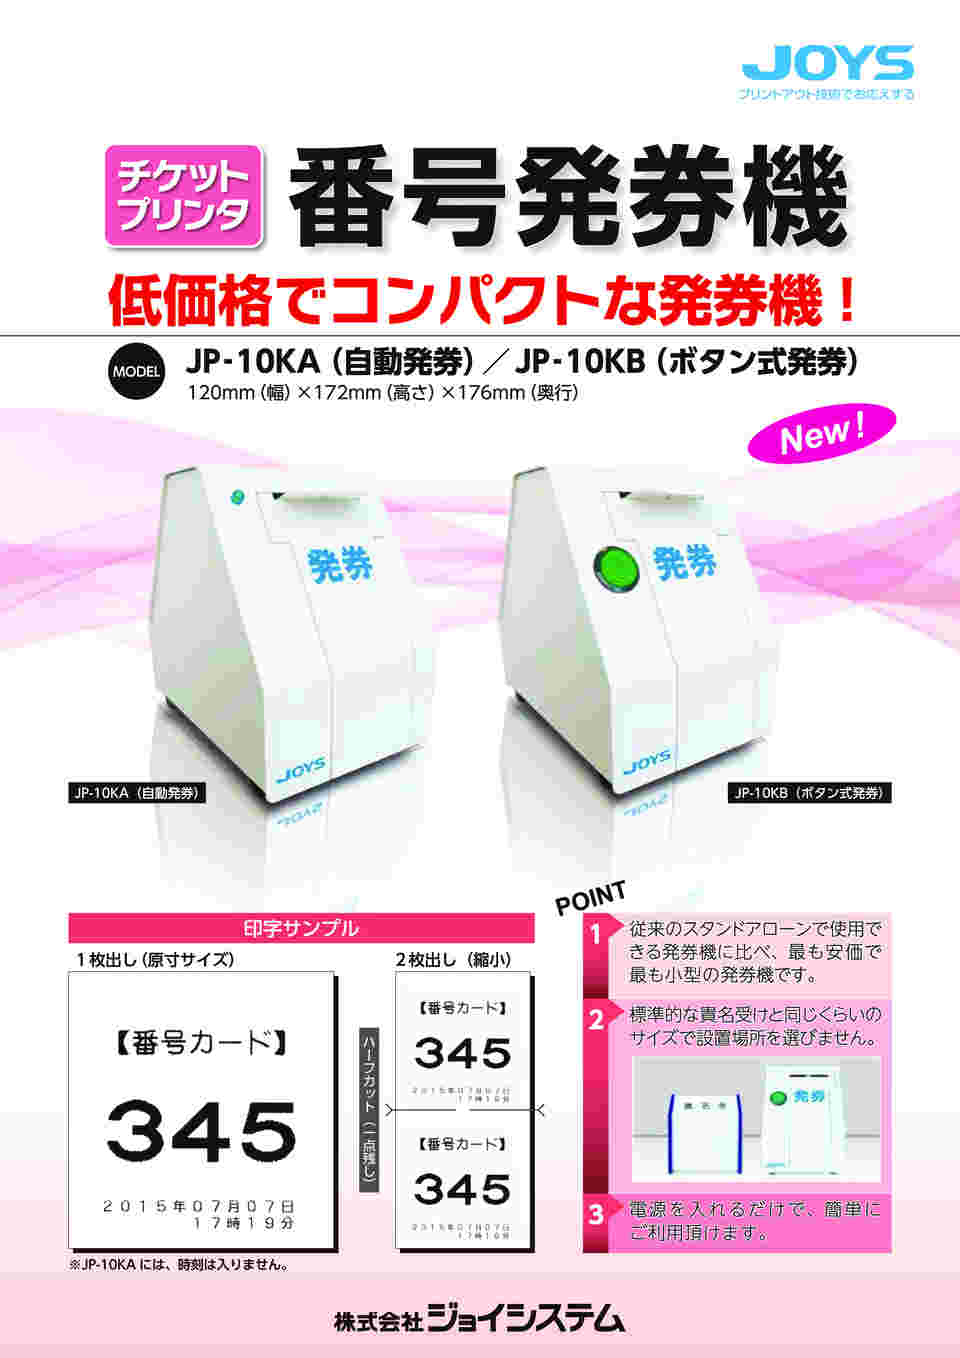 日本販売済み 小型番号発券機（ボタン式発券仕様） JP-10KB 24-3842-01 1入り その他介護用品 